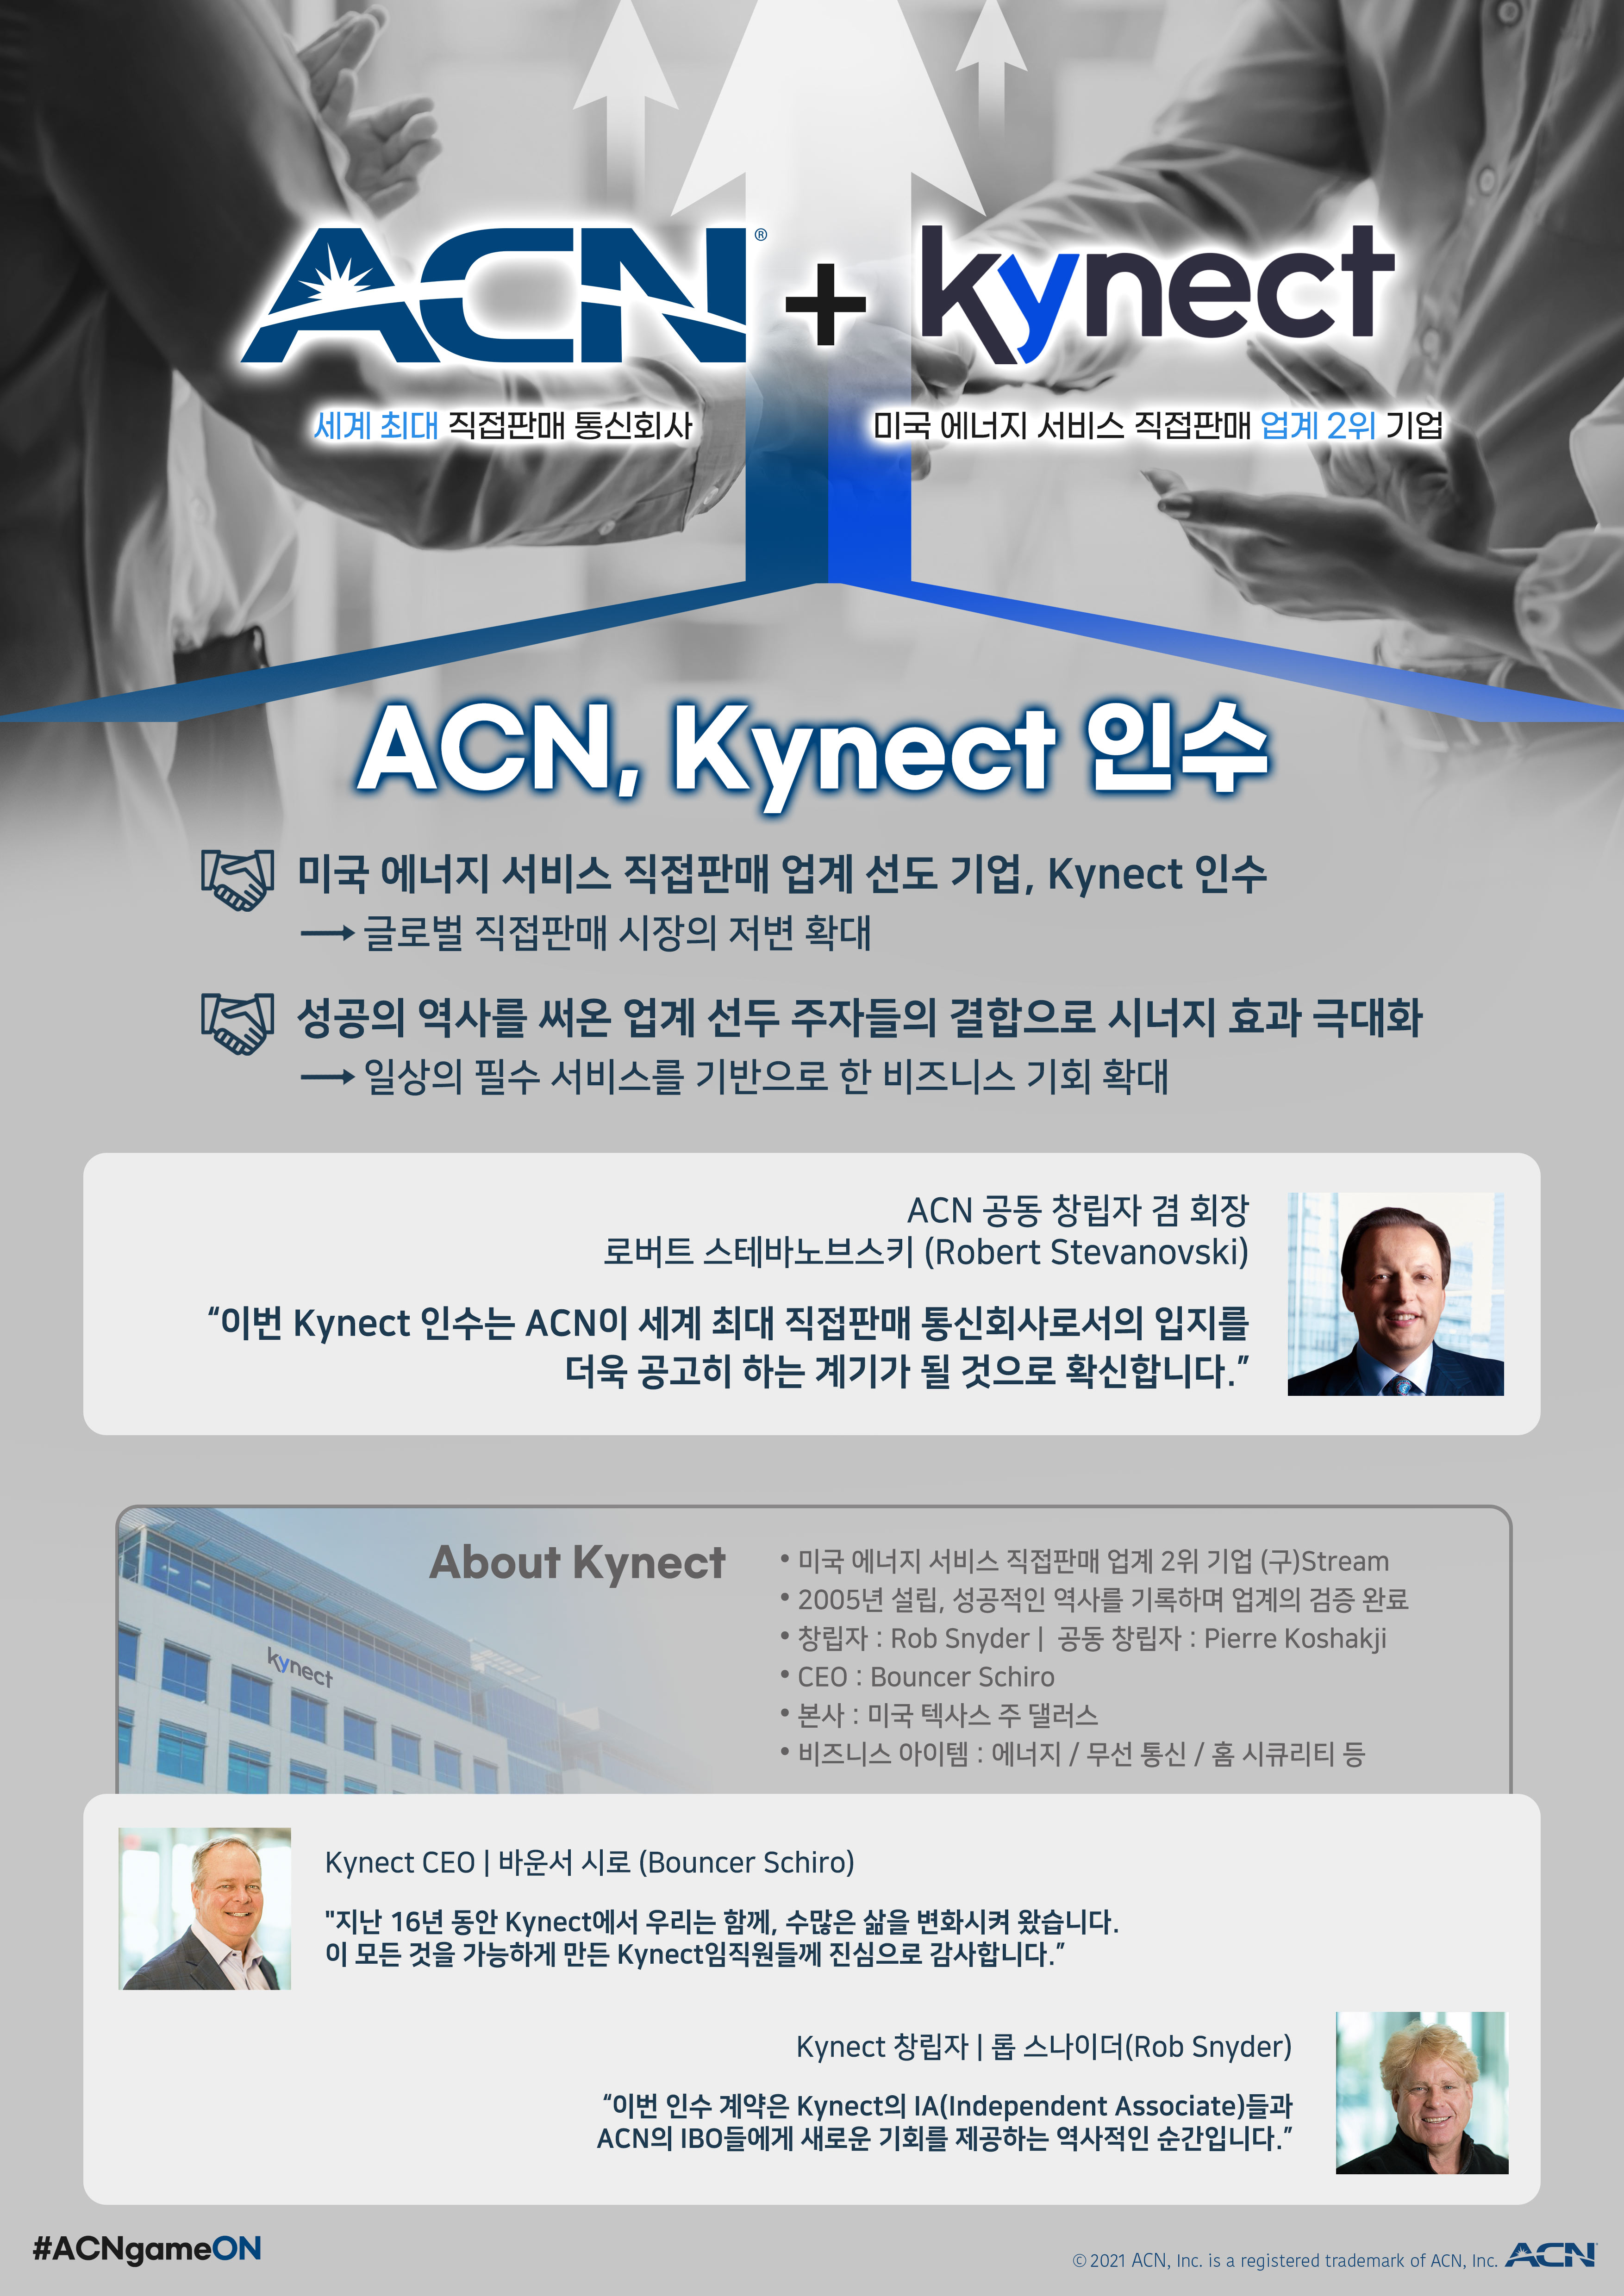 세계 최대 직접판매 통신회사 ACN, Kynect Ltd. 인수